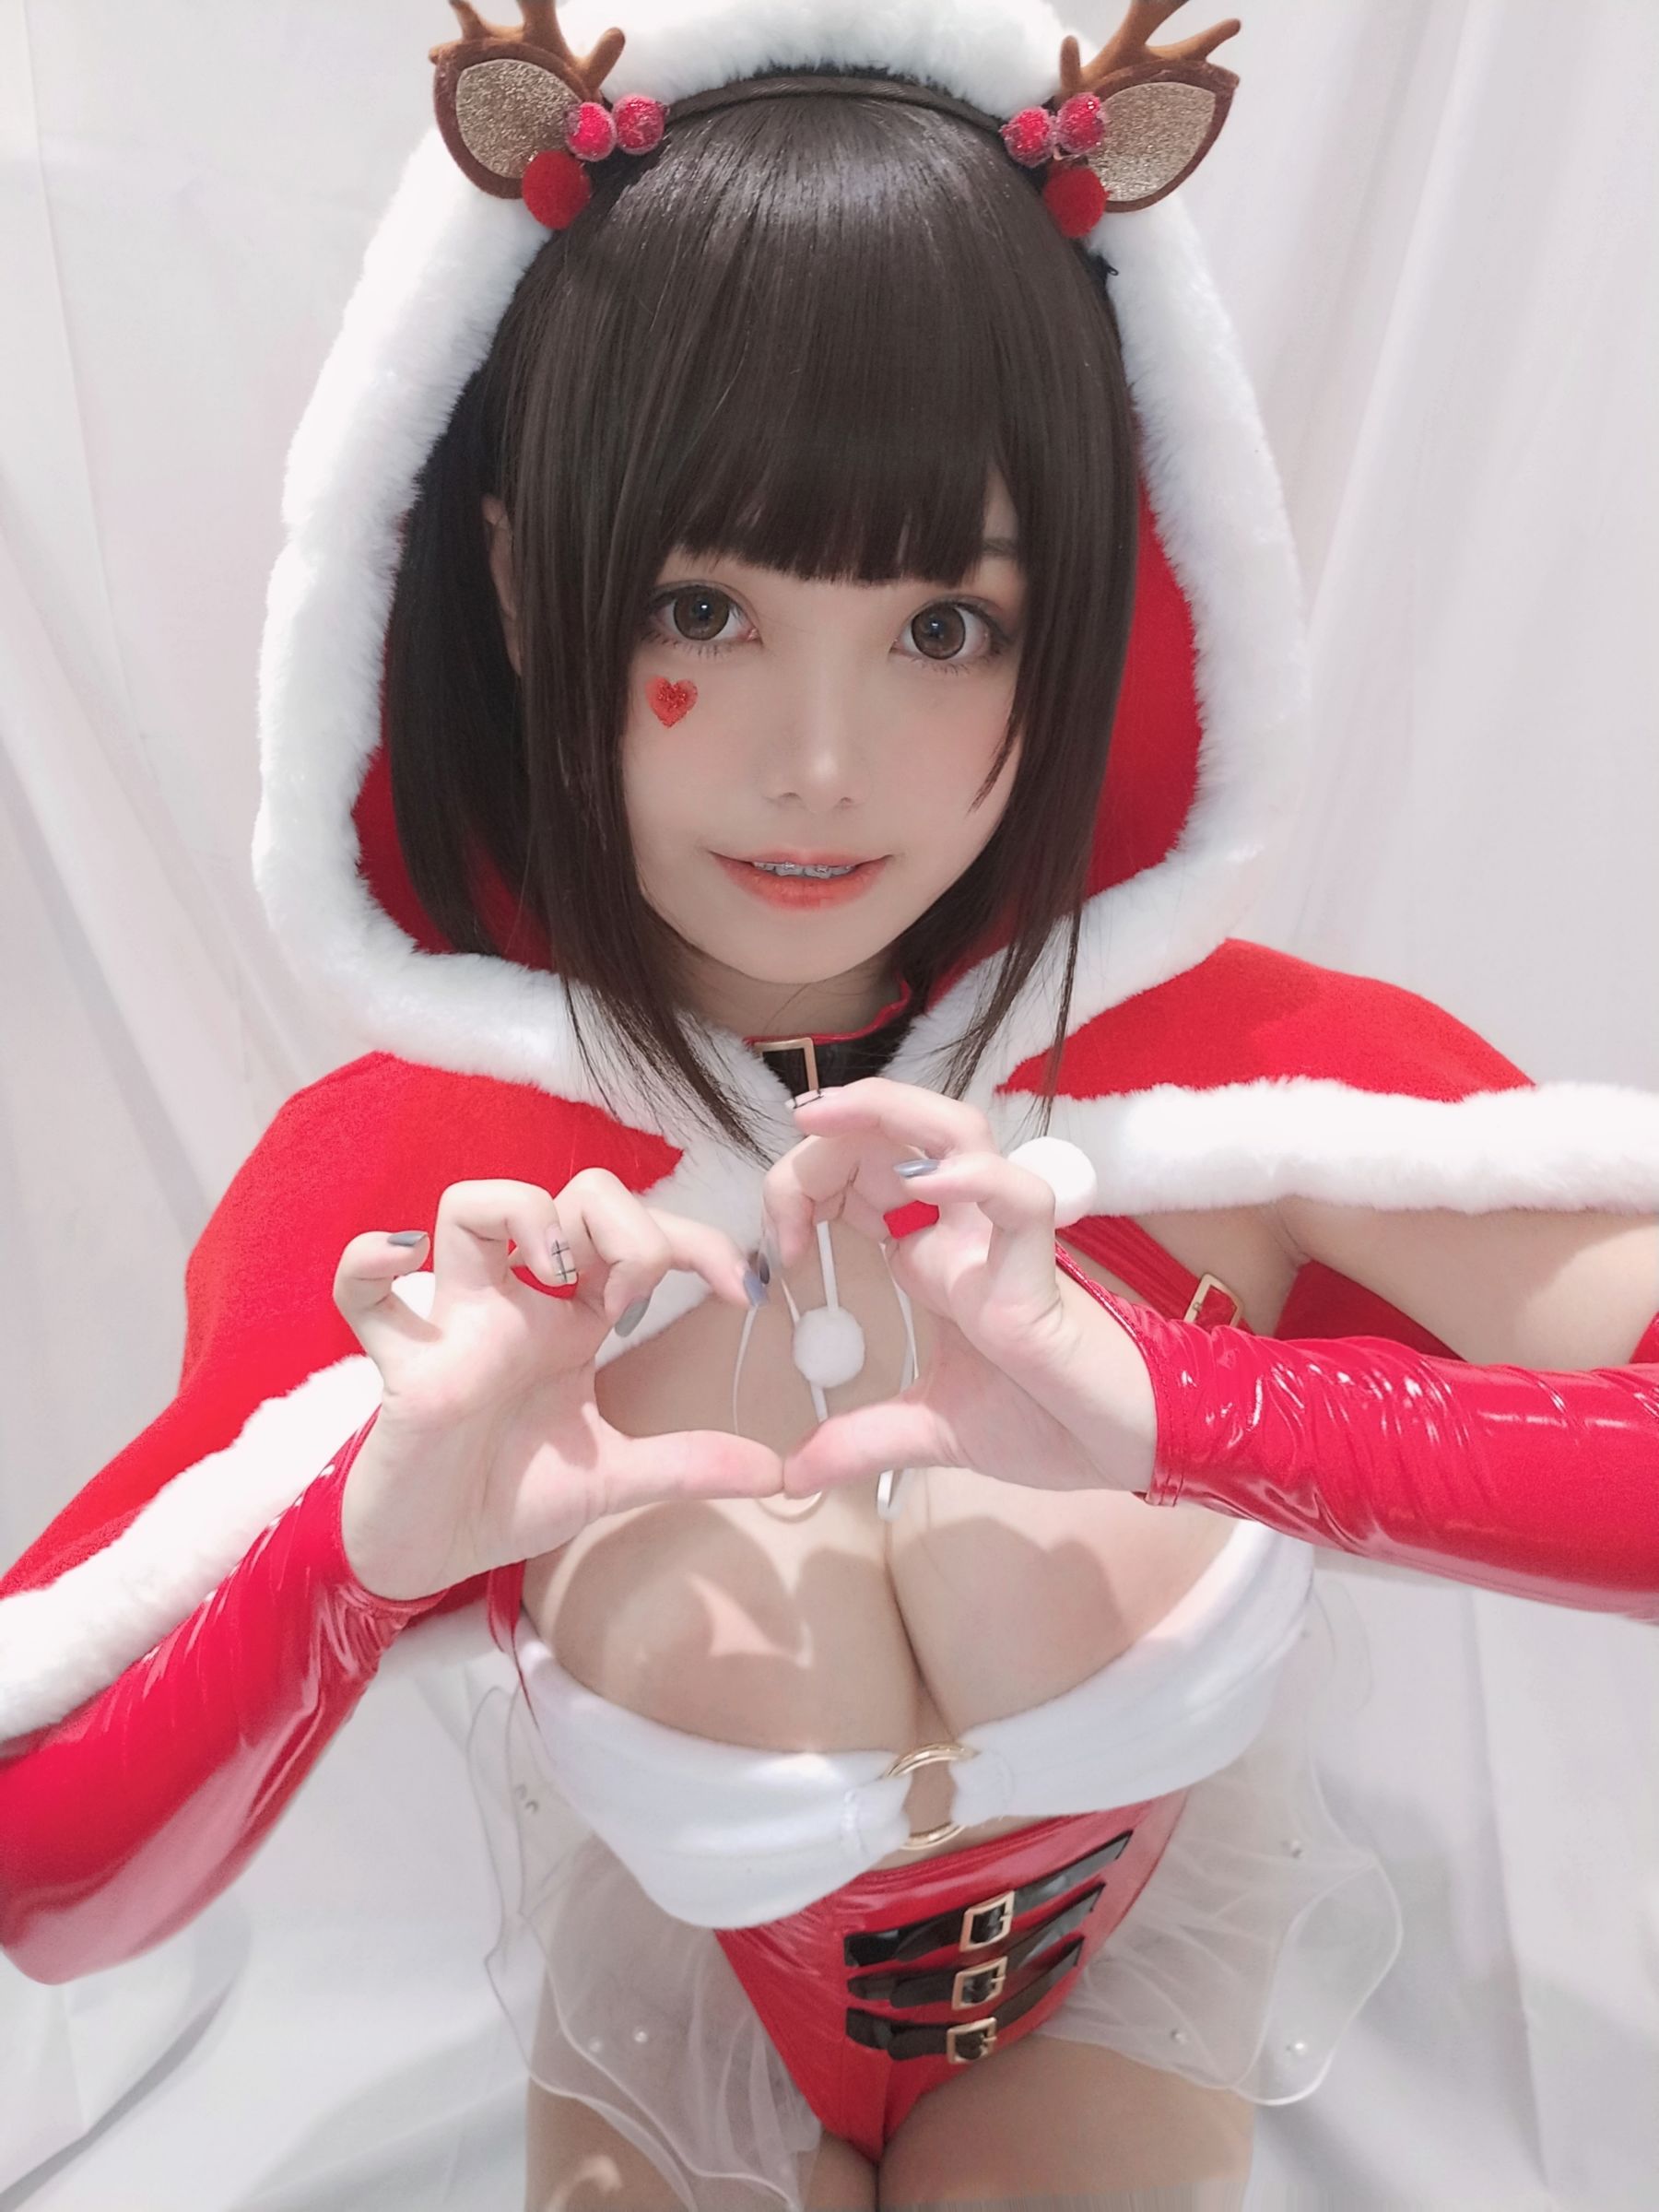 [Cosplay写真] 萌系小姐姐蜜汁猫裘 - 圣诞自拍/(36P)